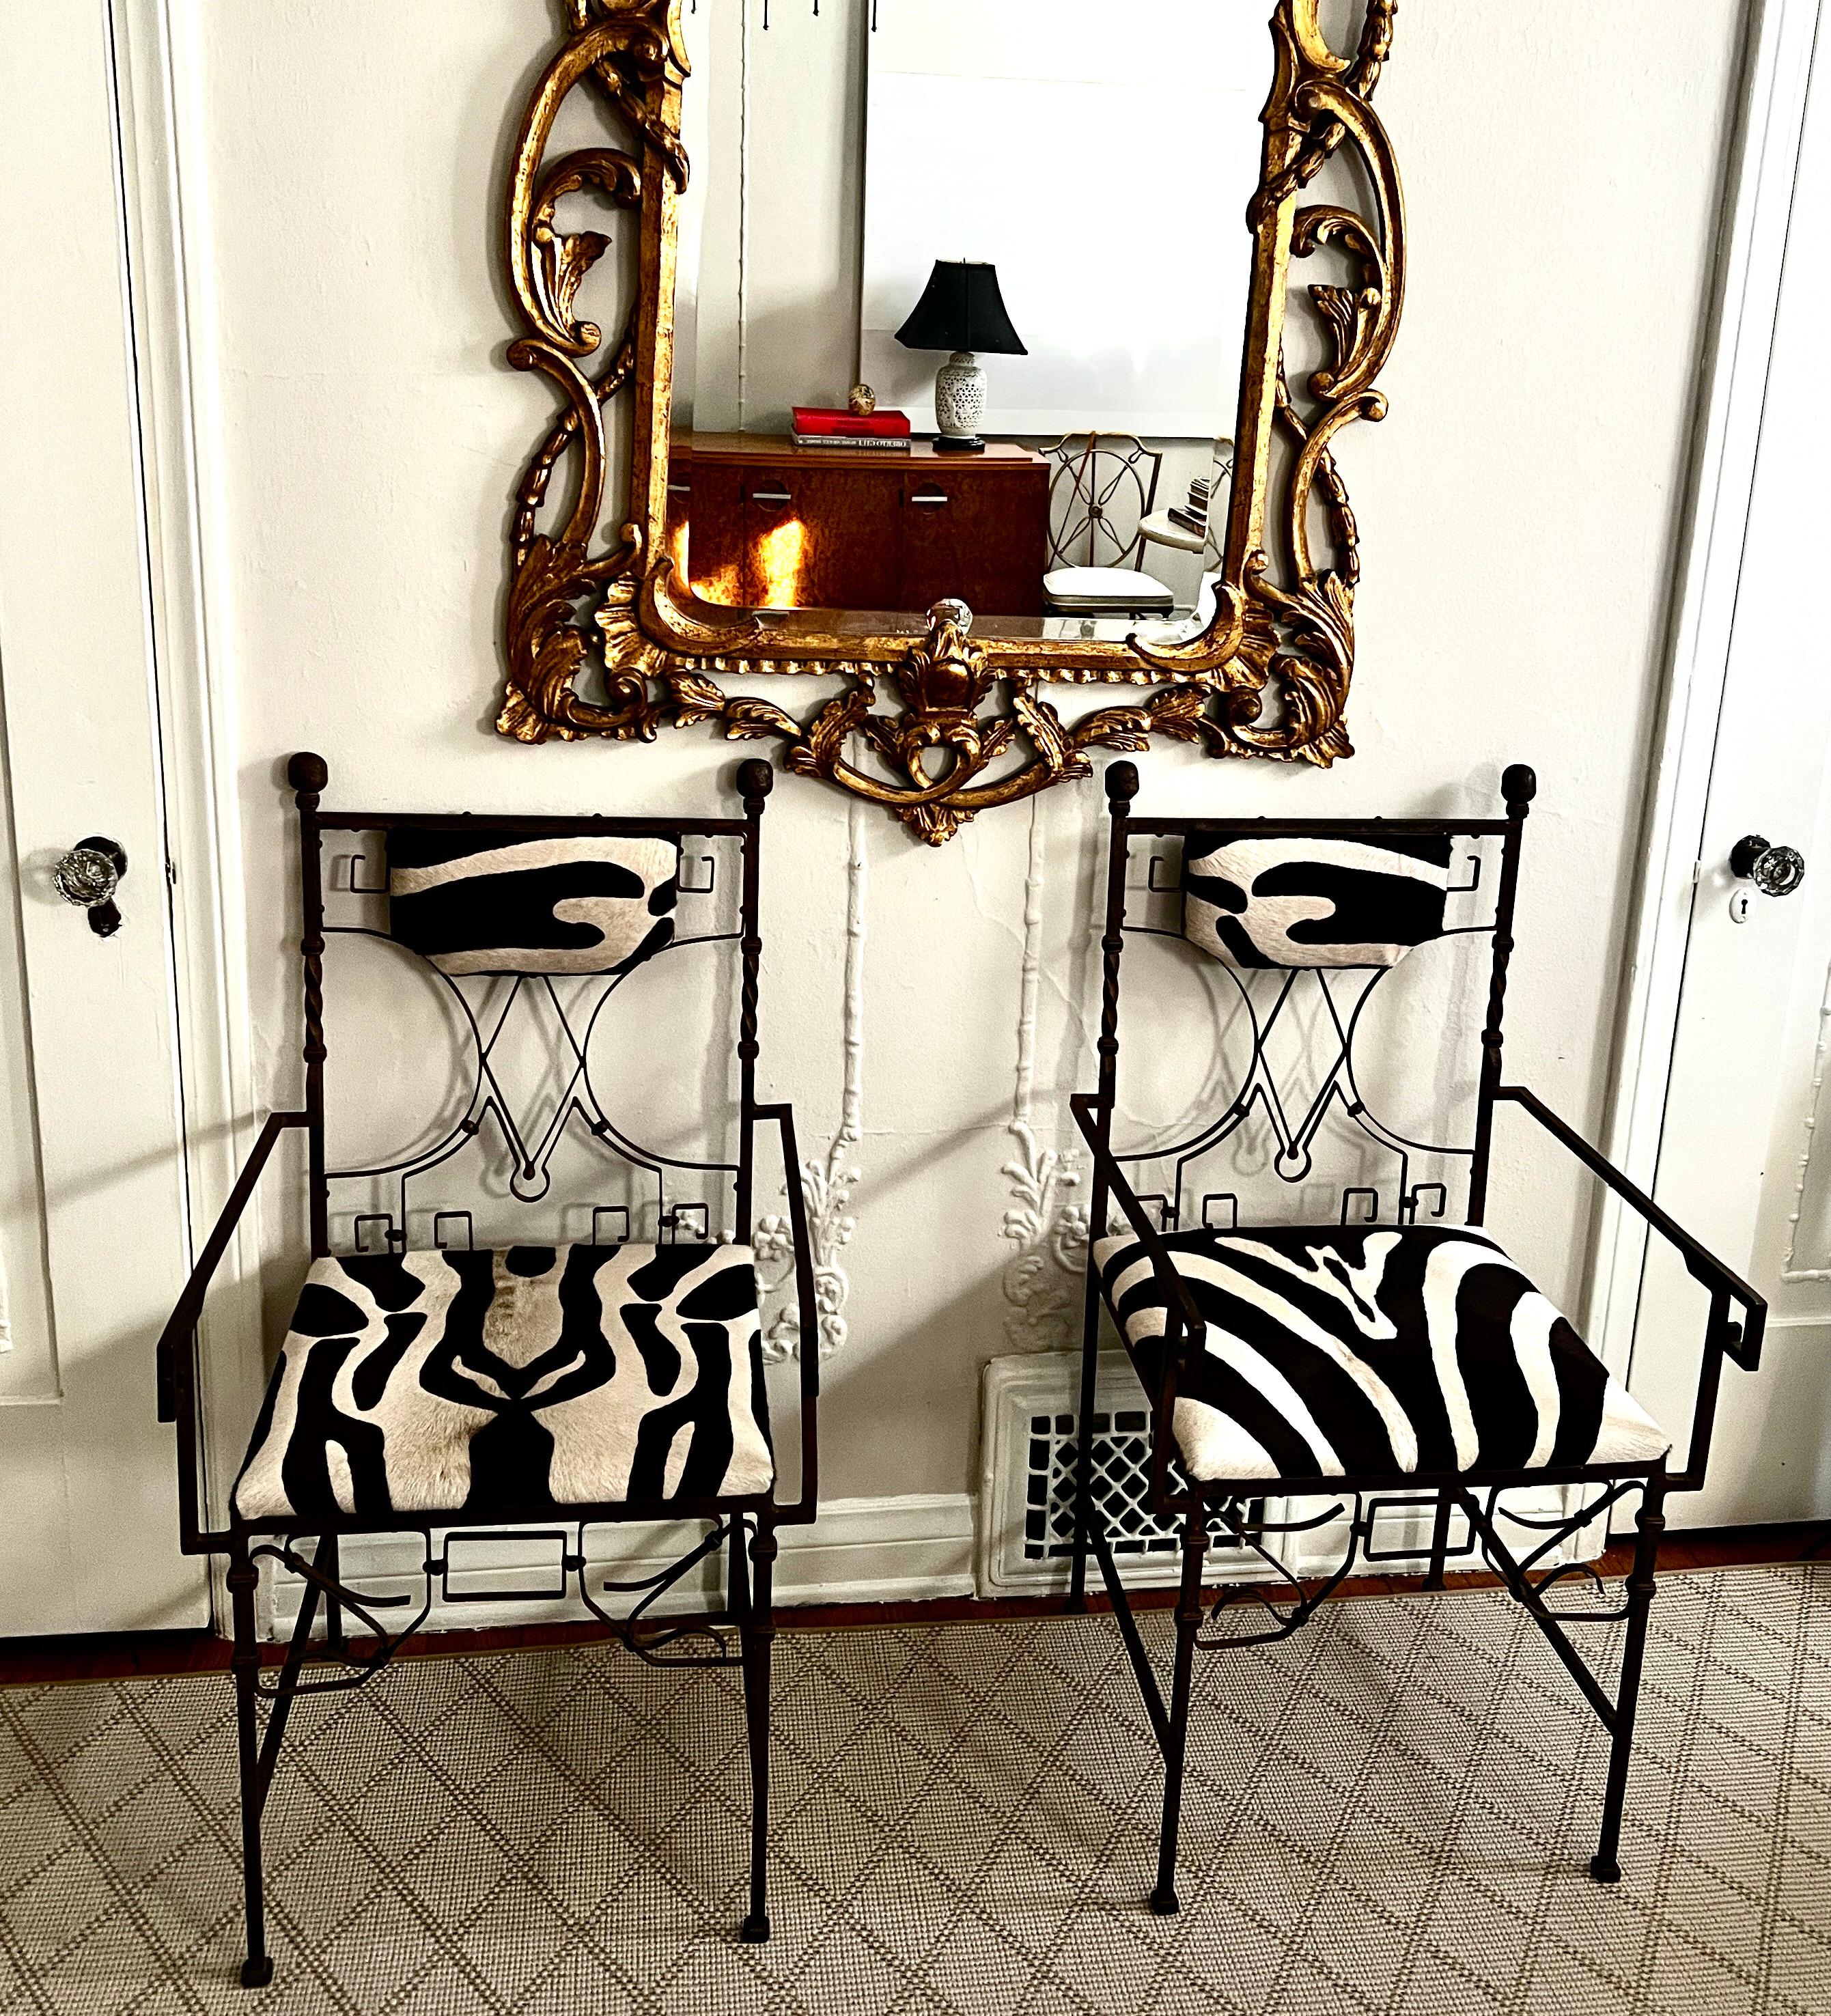 Ein exquisites Paar wunderschön gestalteter französischer Art-Déco-Stühle aus Schmiedeeisen, gepolstert mit Kuhfell mit Zebradruck.

Verwenden Sie das Paar als Kunstwerk, das einen Eingang flankiert, in einem Ess- oder Frühstückszimmer.  Das Zebra